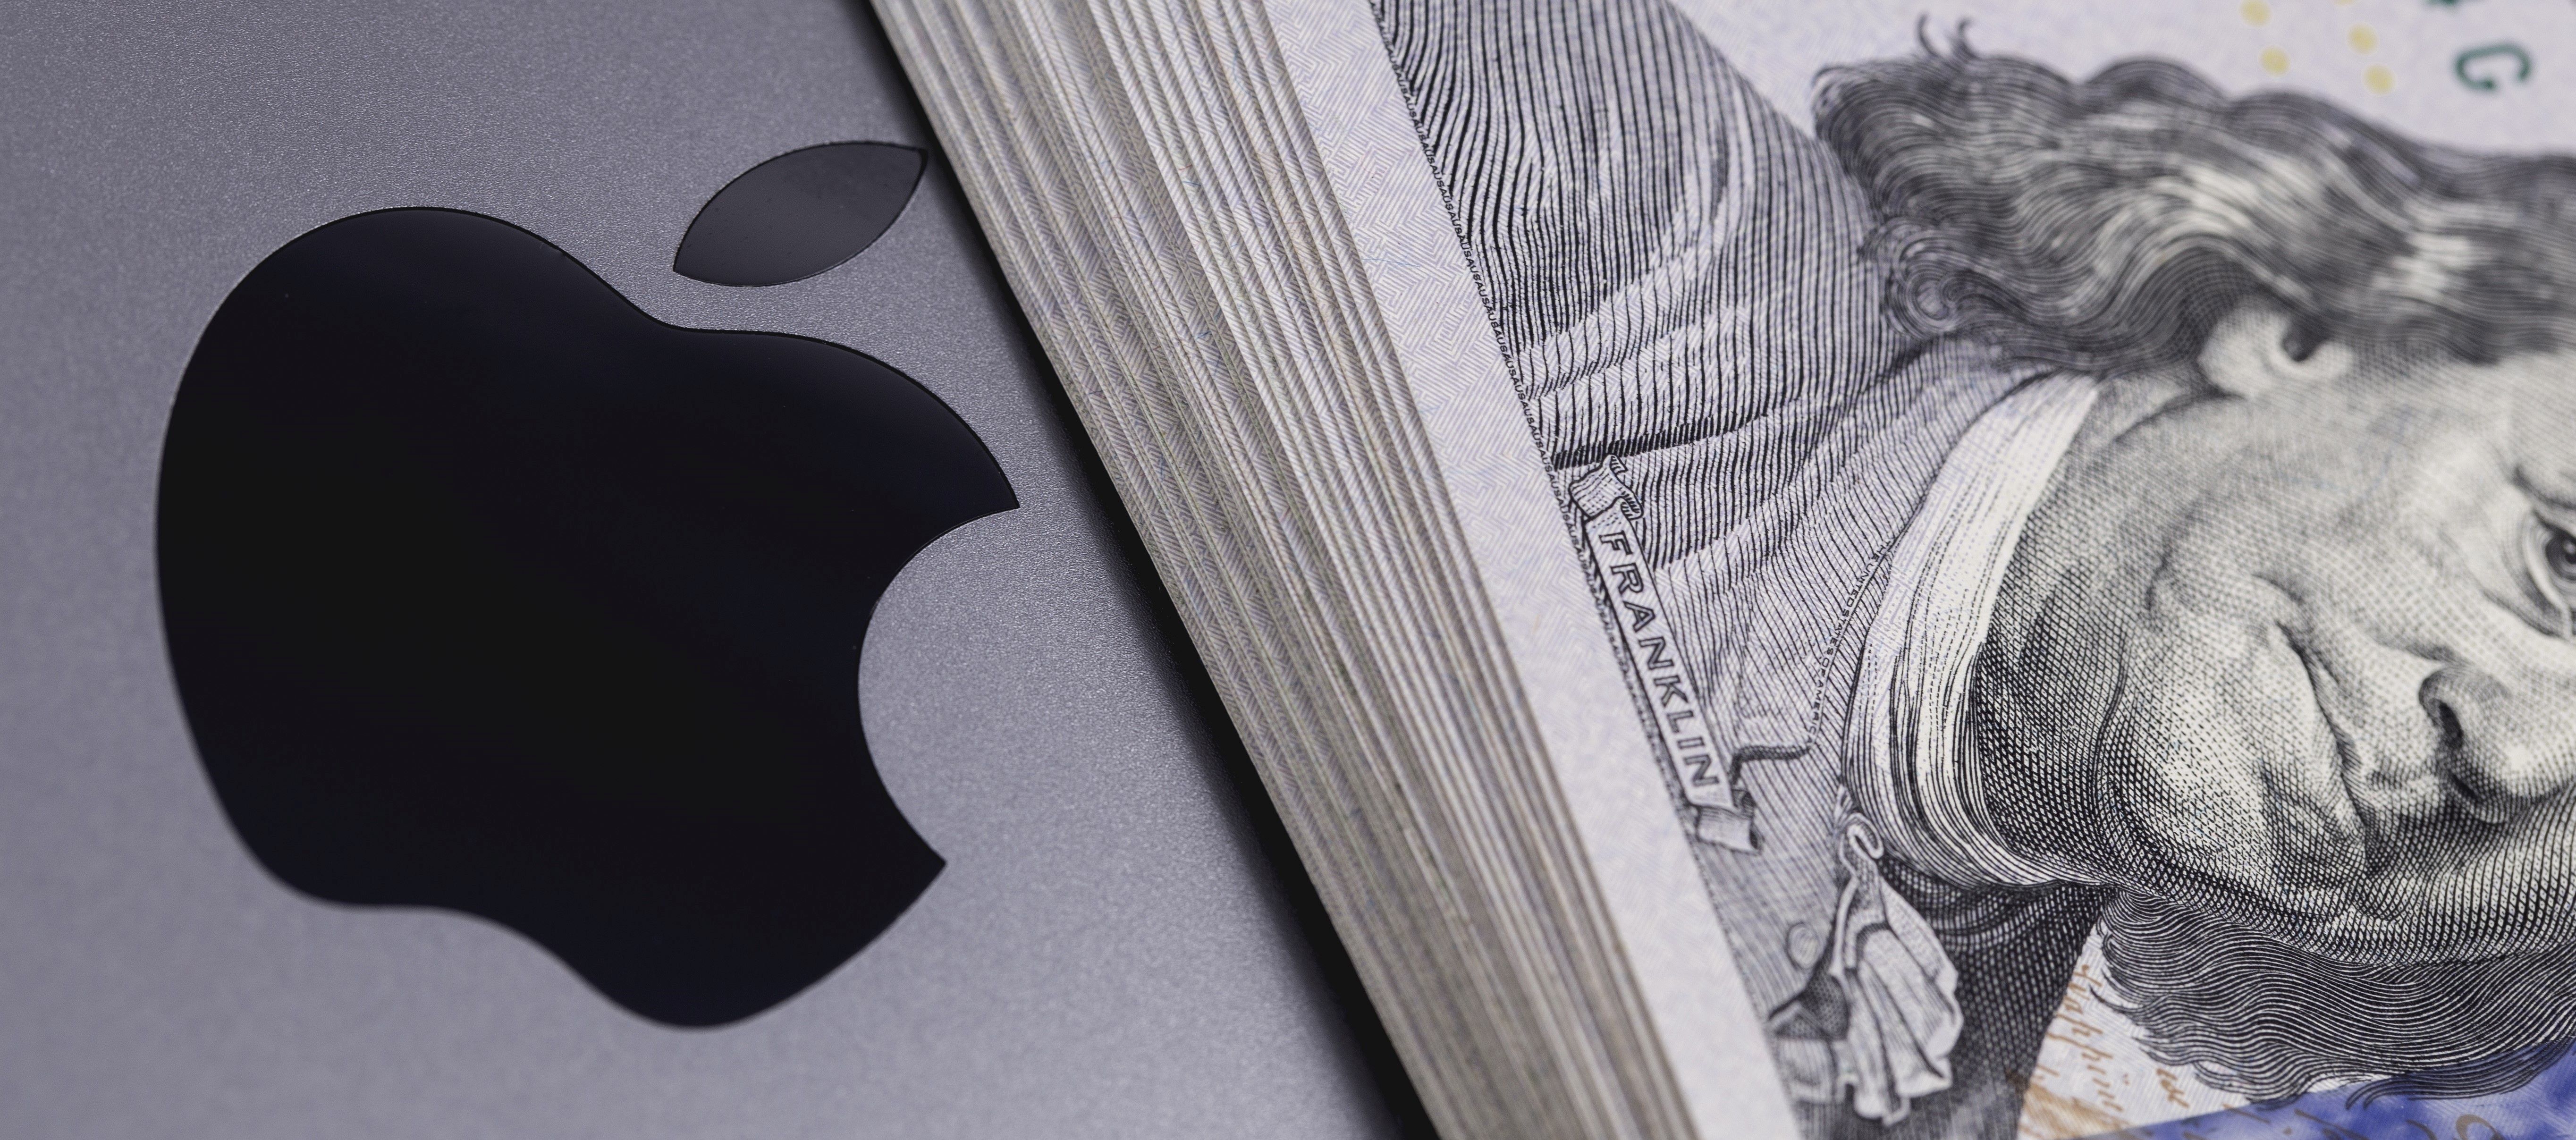 Visszaestek az Apple készülékeinek az eladásai, viszont más üzletáguk hasít